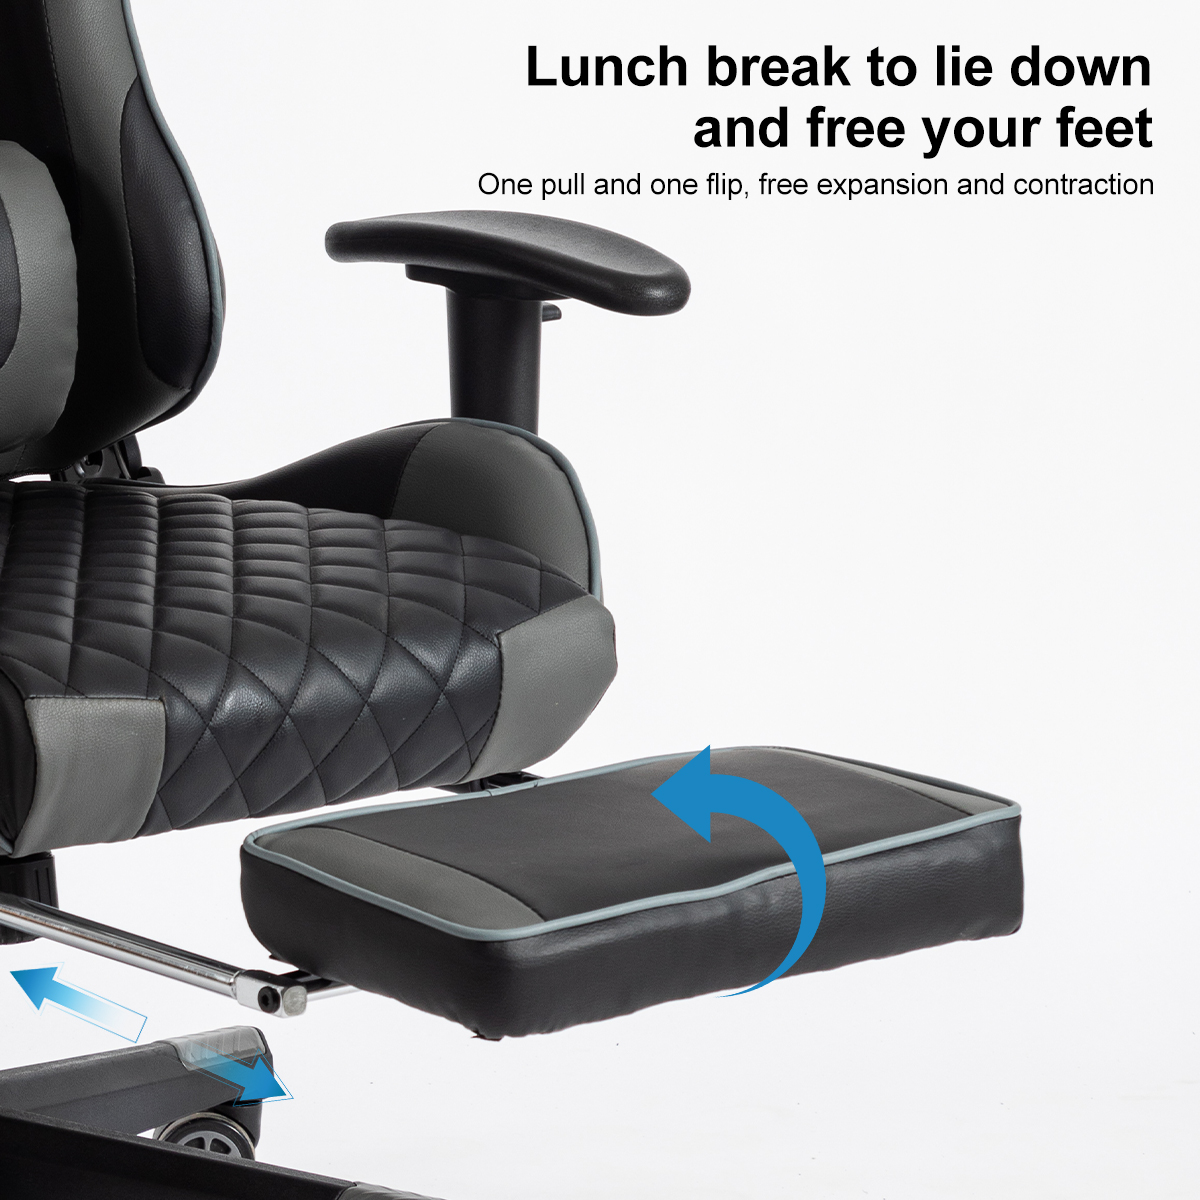 Beinstütze Gaming-Stuhl, mit Schwarz Stuhl schwarz FOXSPORT